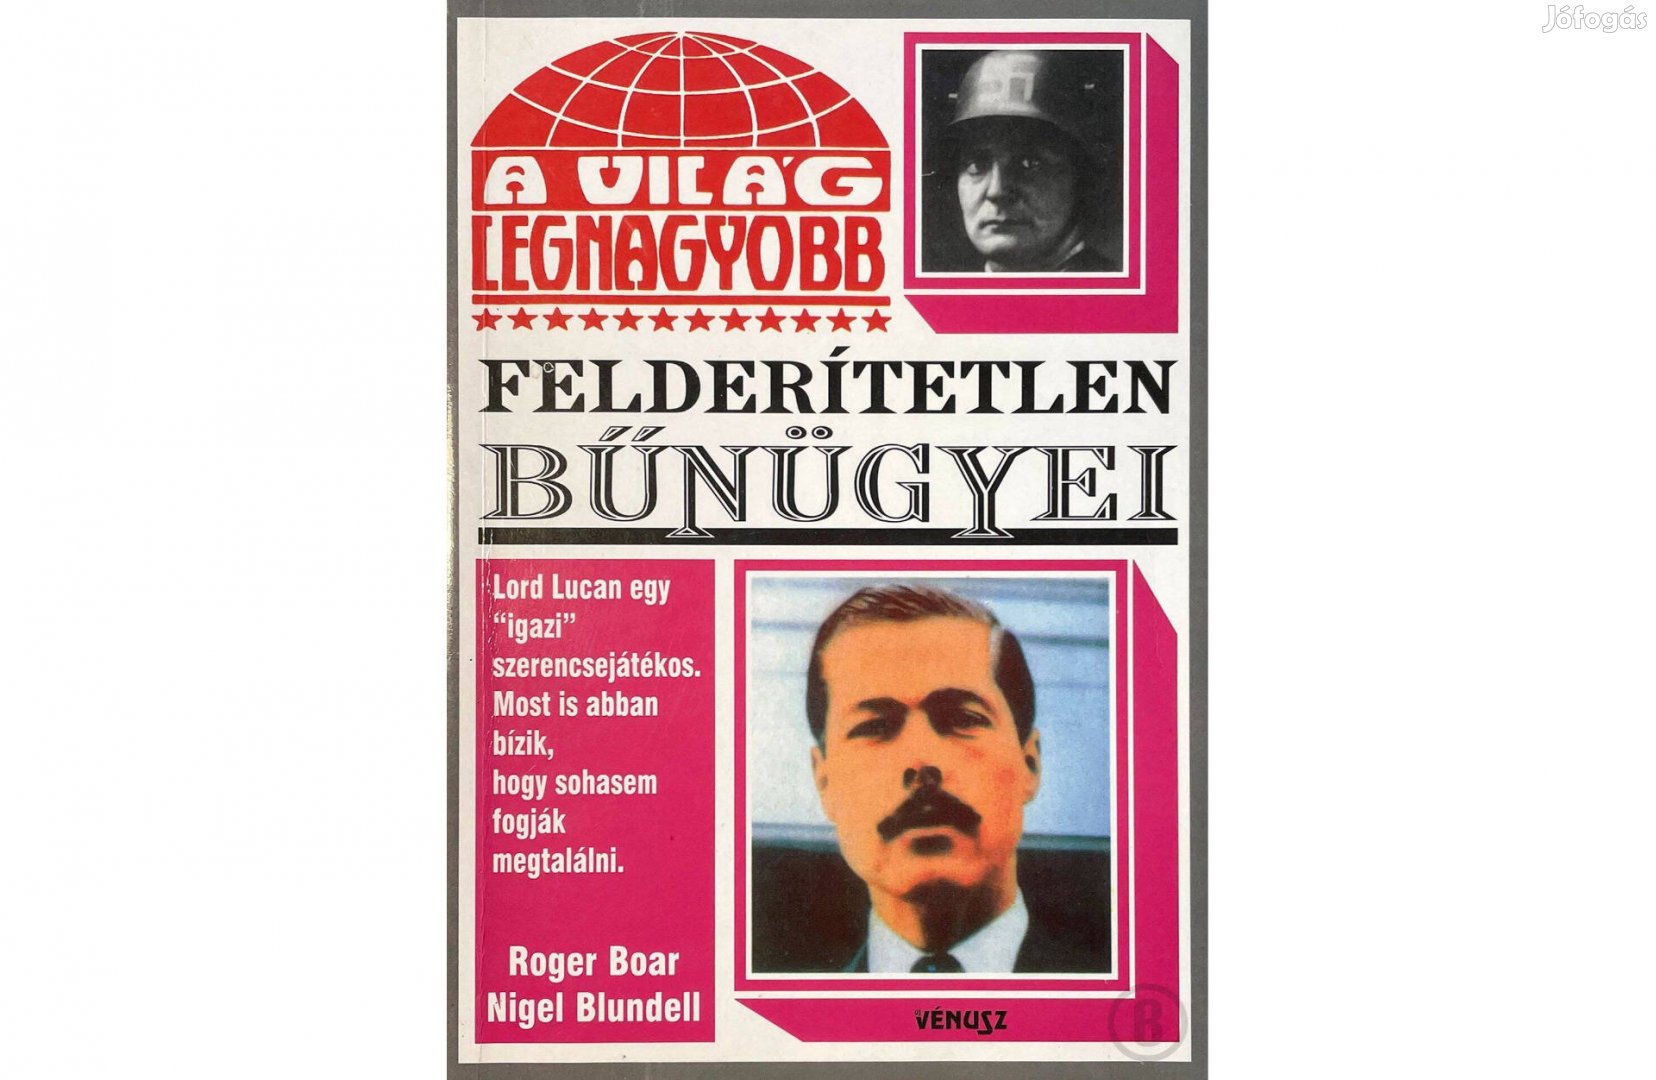 Roger Boar - Nigel Blundell: A világ legnagyobb felderítetlen bűnügyei